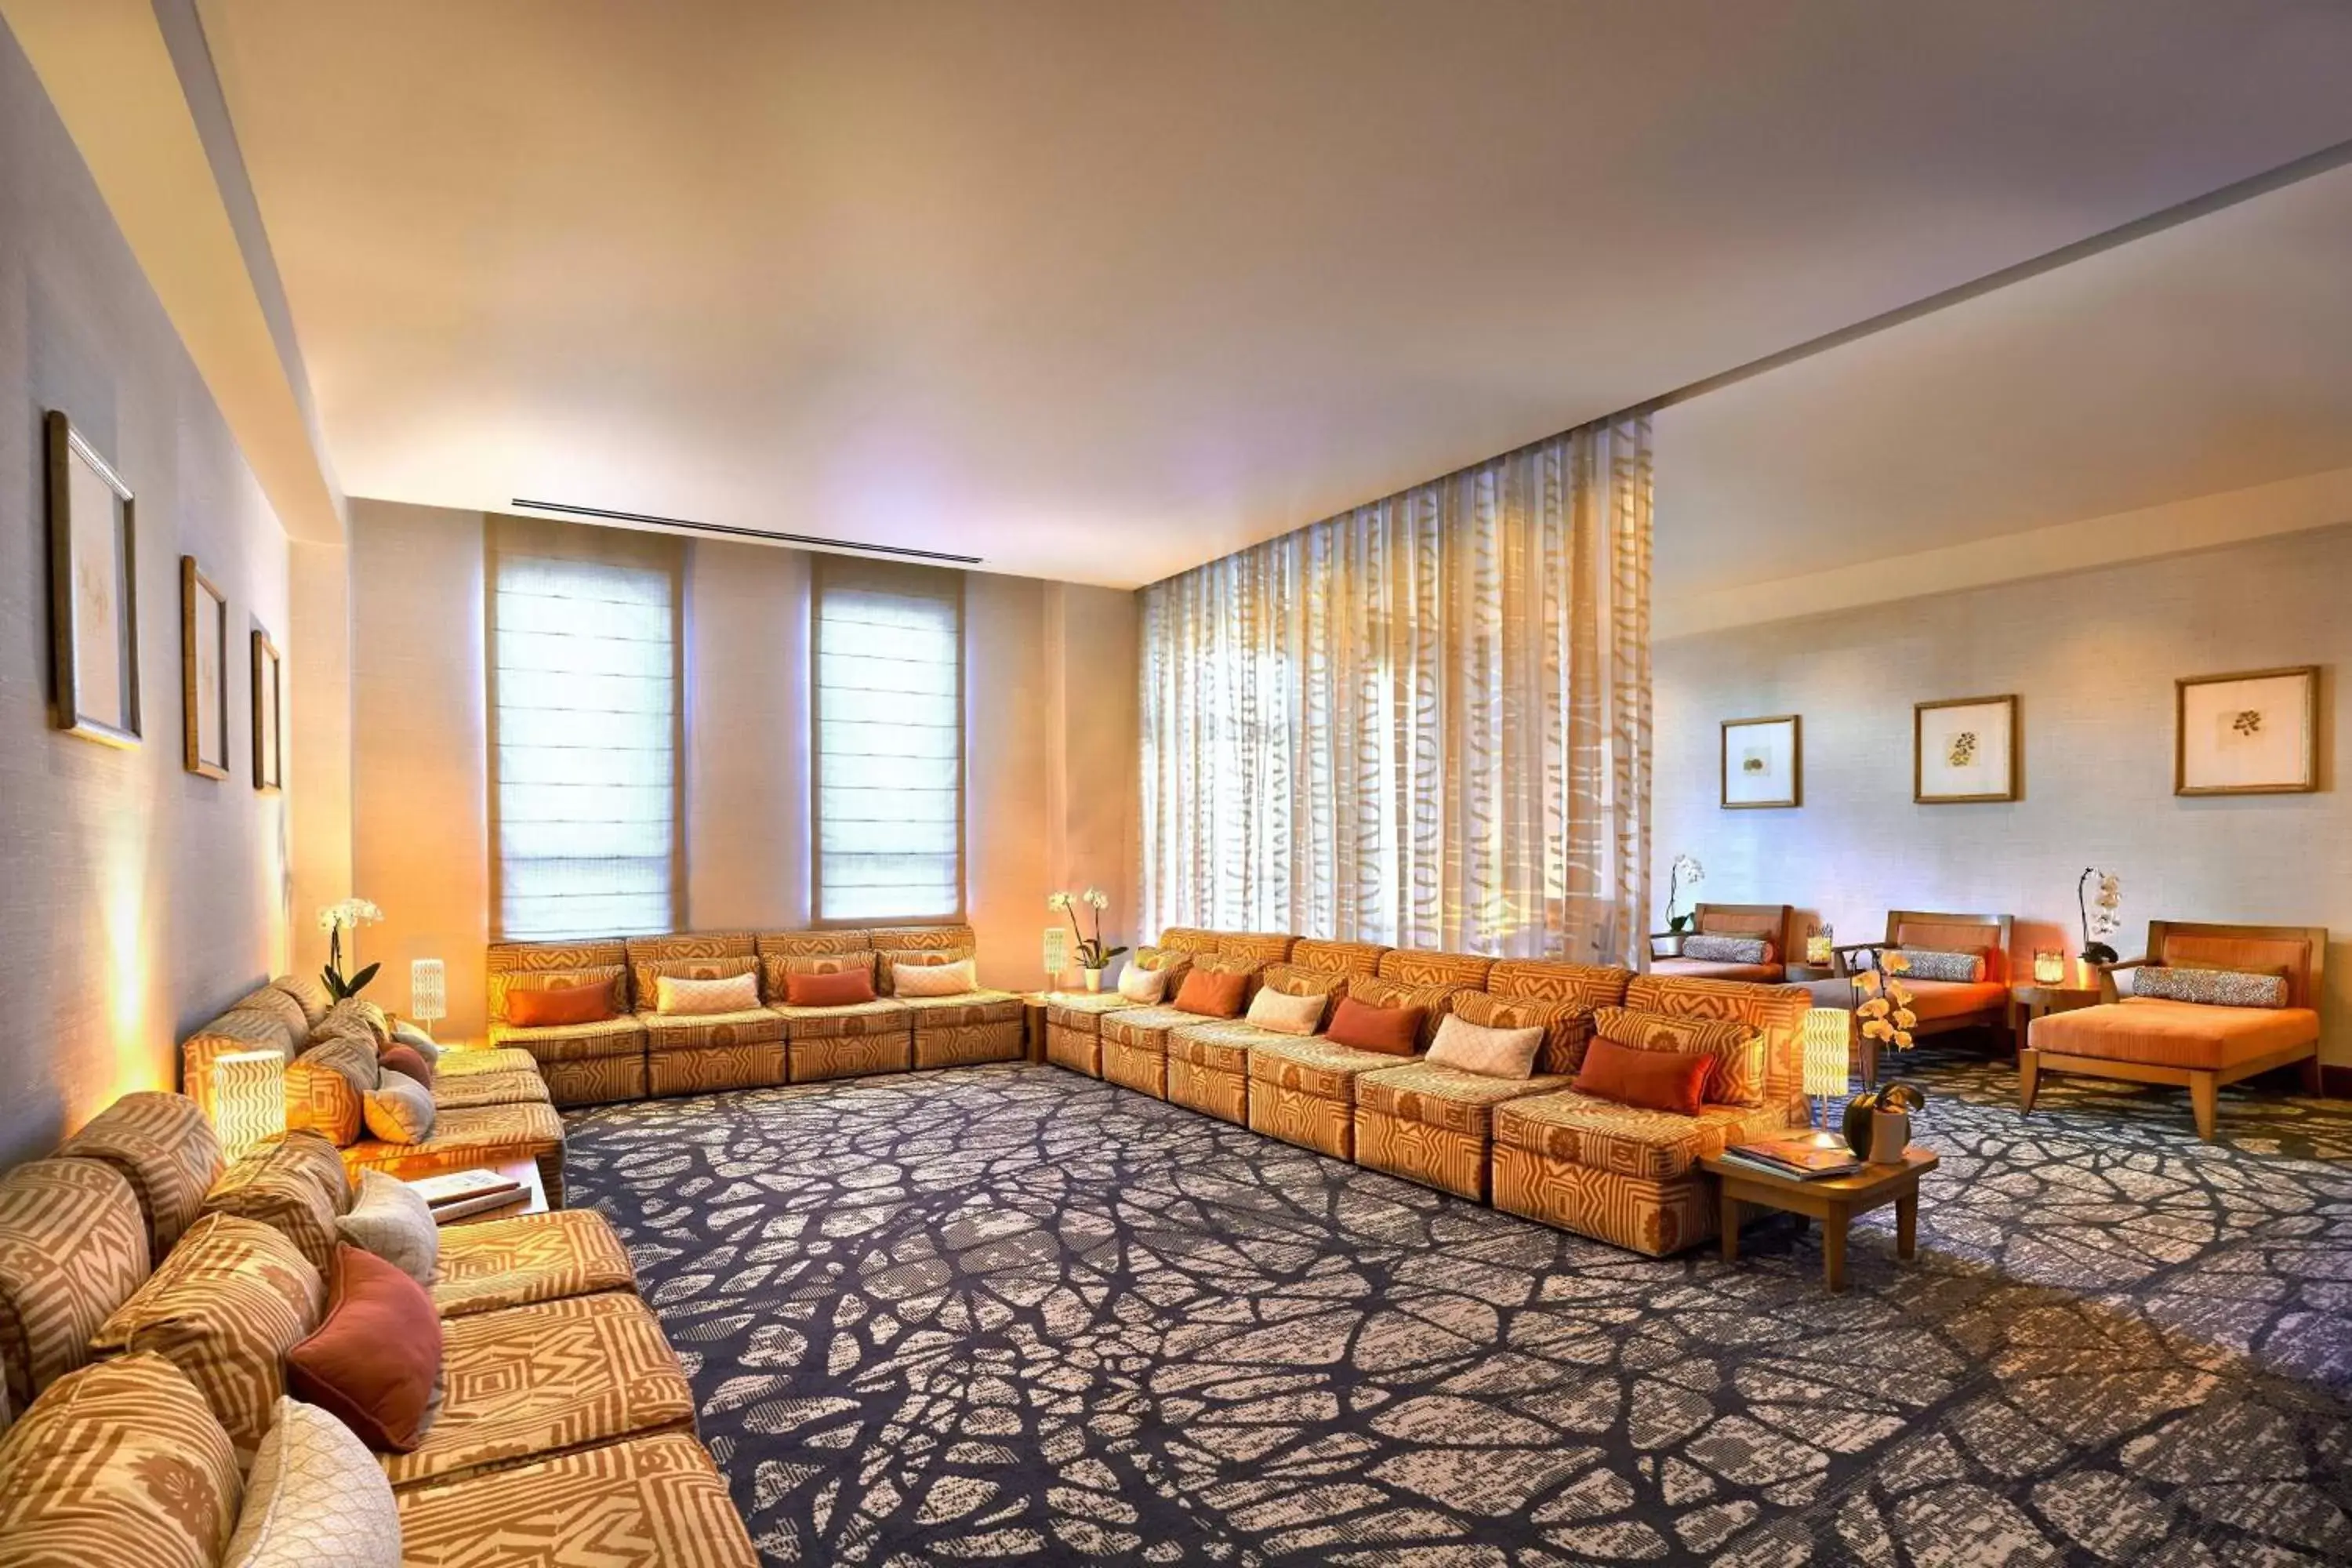 Lounge or bar, Seating Area in JW Marriott Desert Springs Resort & Spa